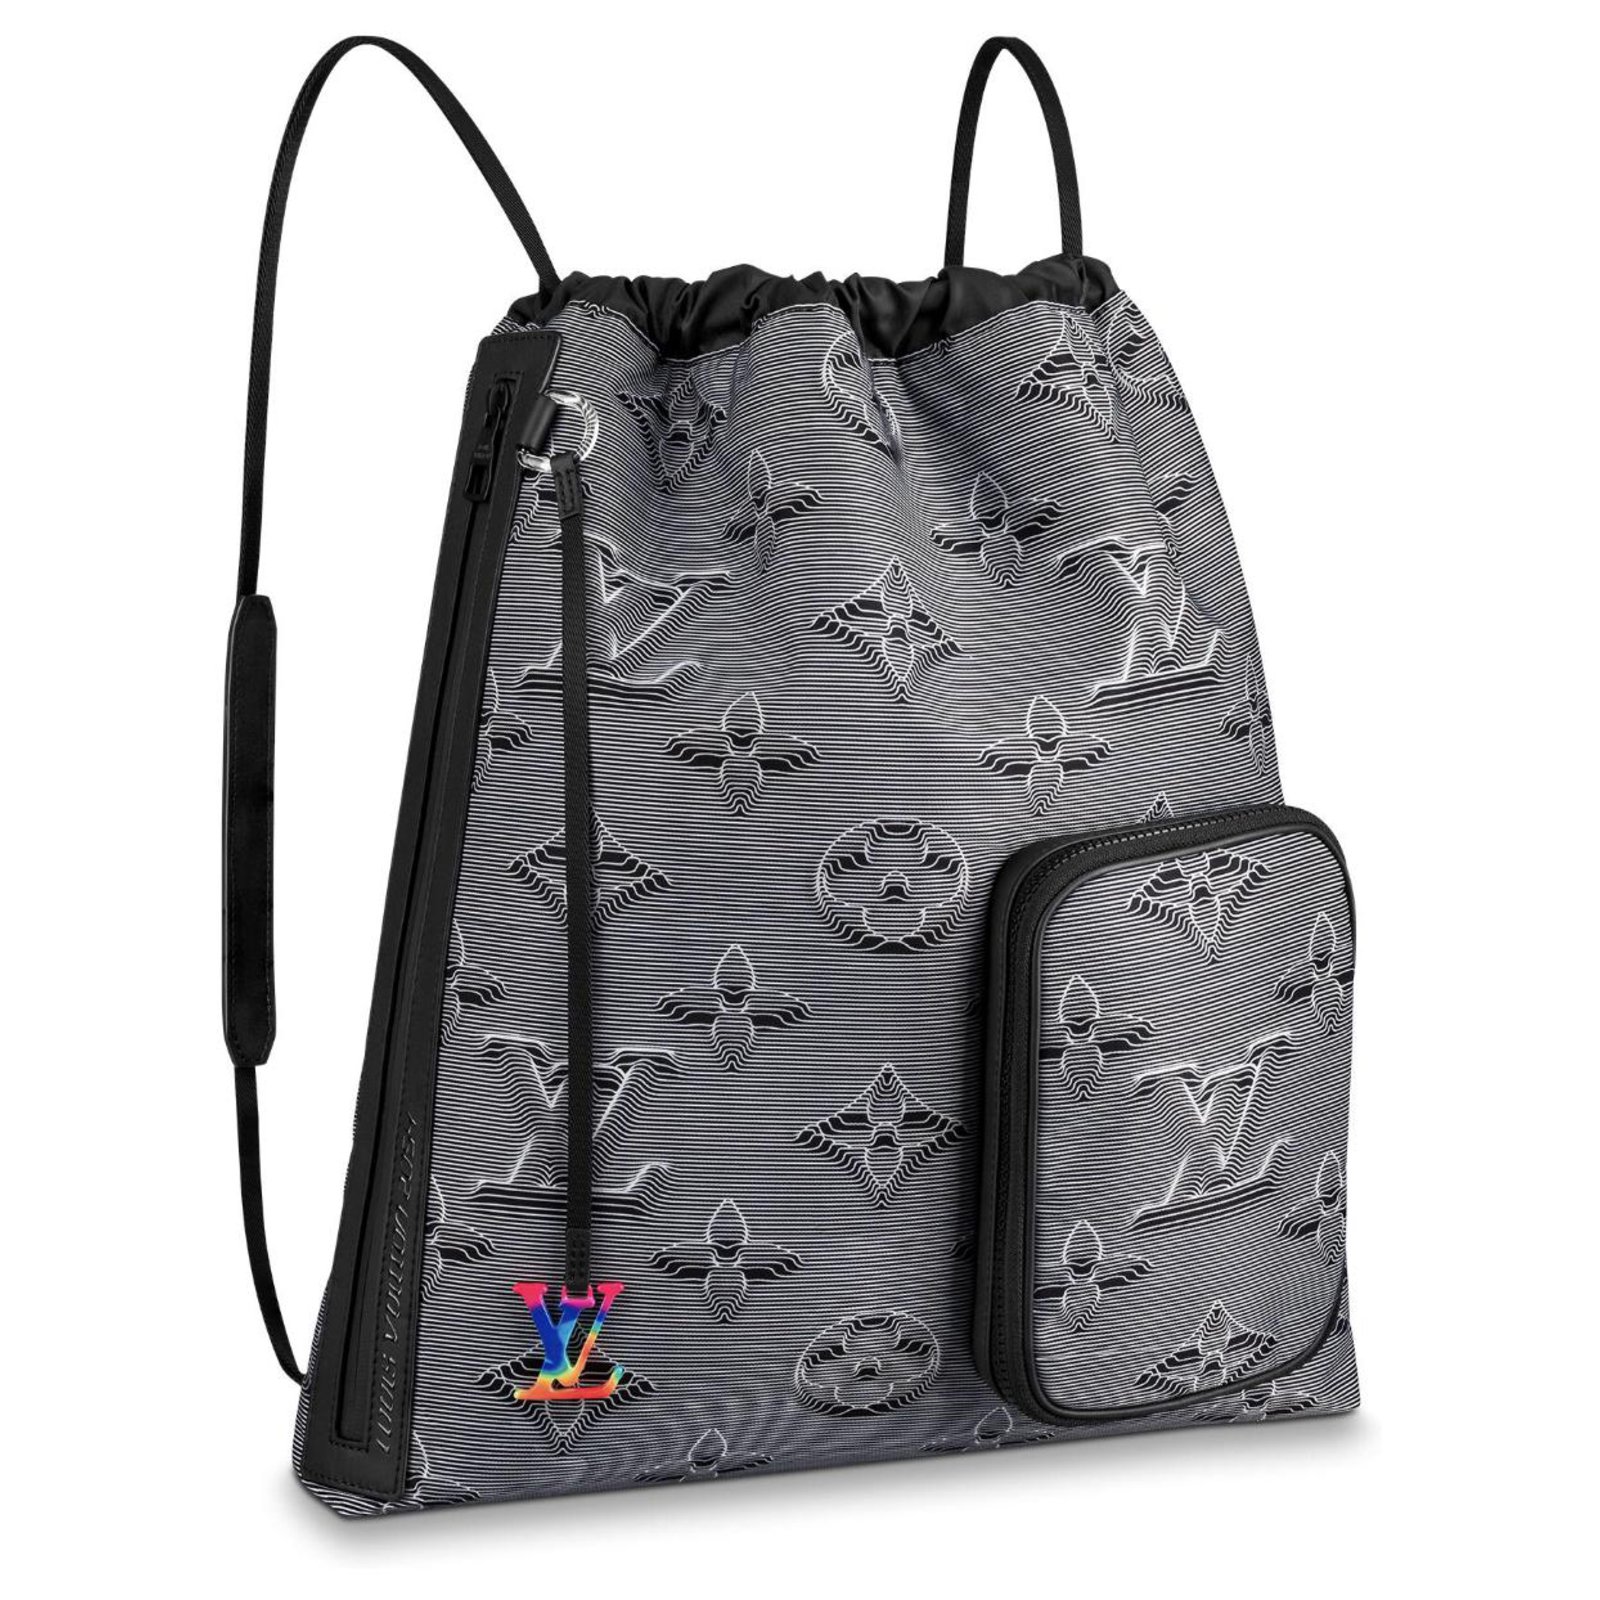 LV backpack new